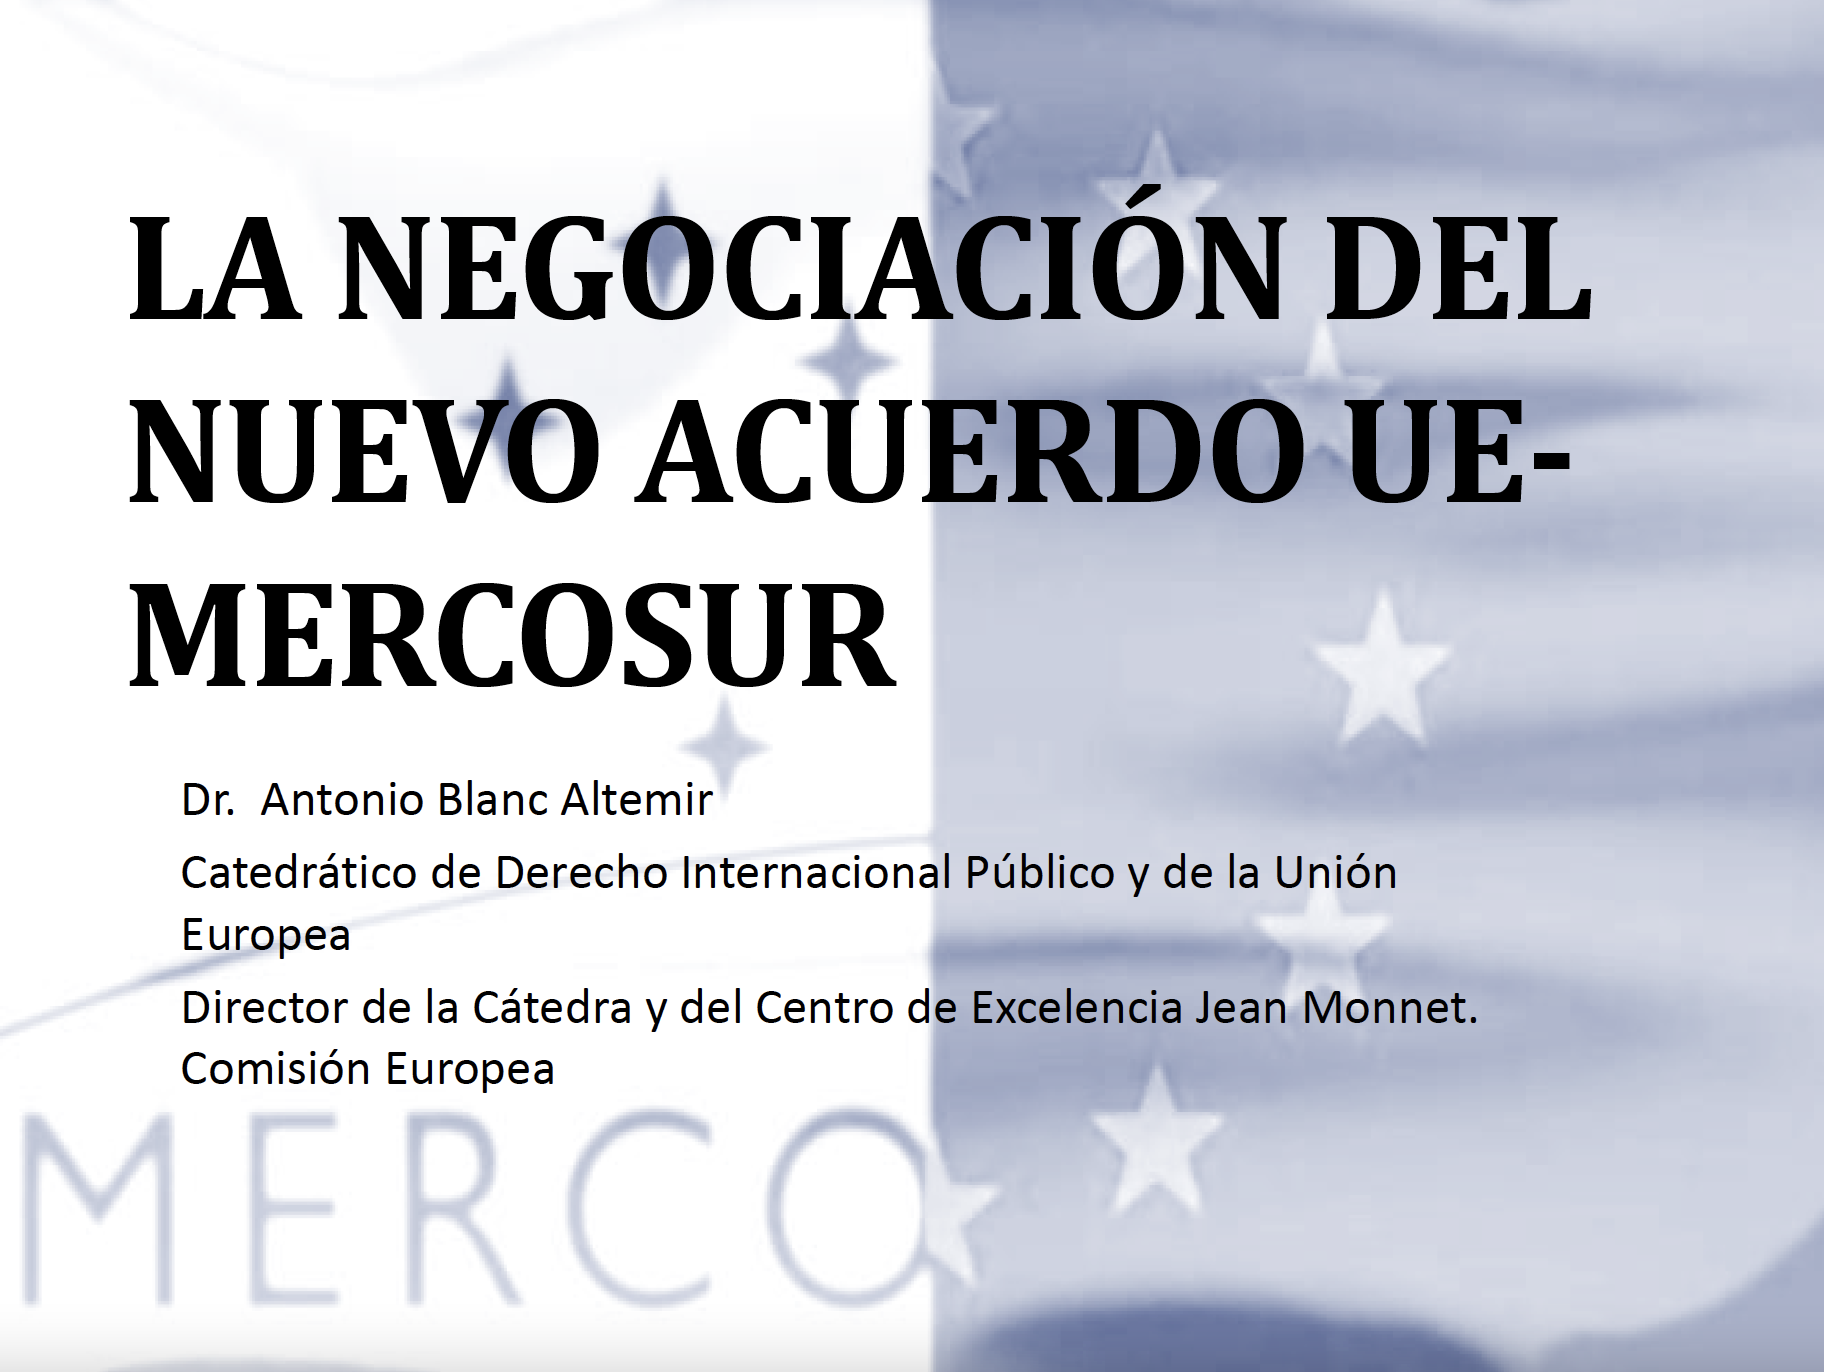 La negociación del nuevo acuerdo UE-Mercosur